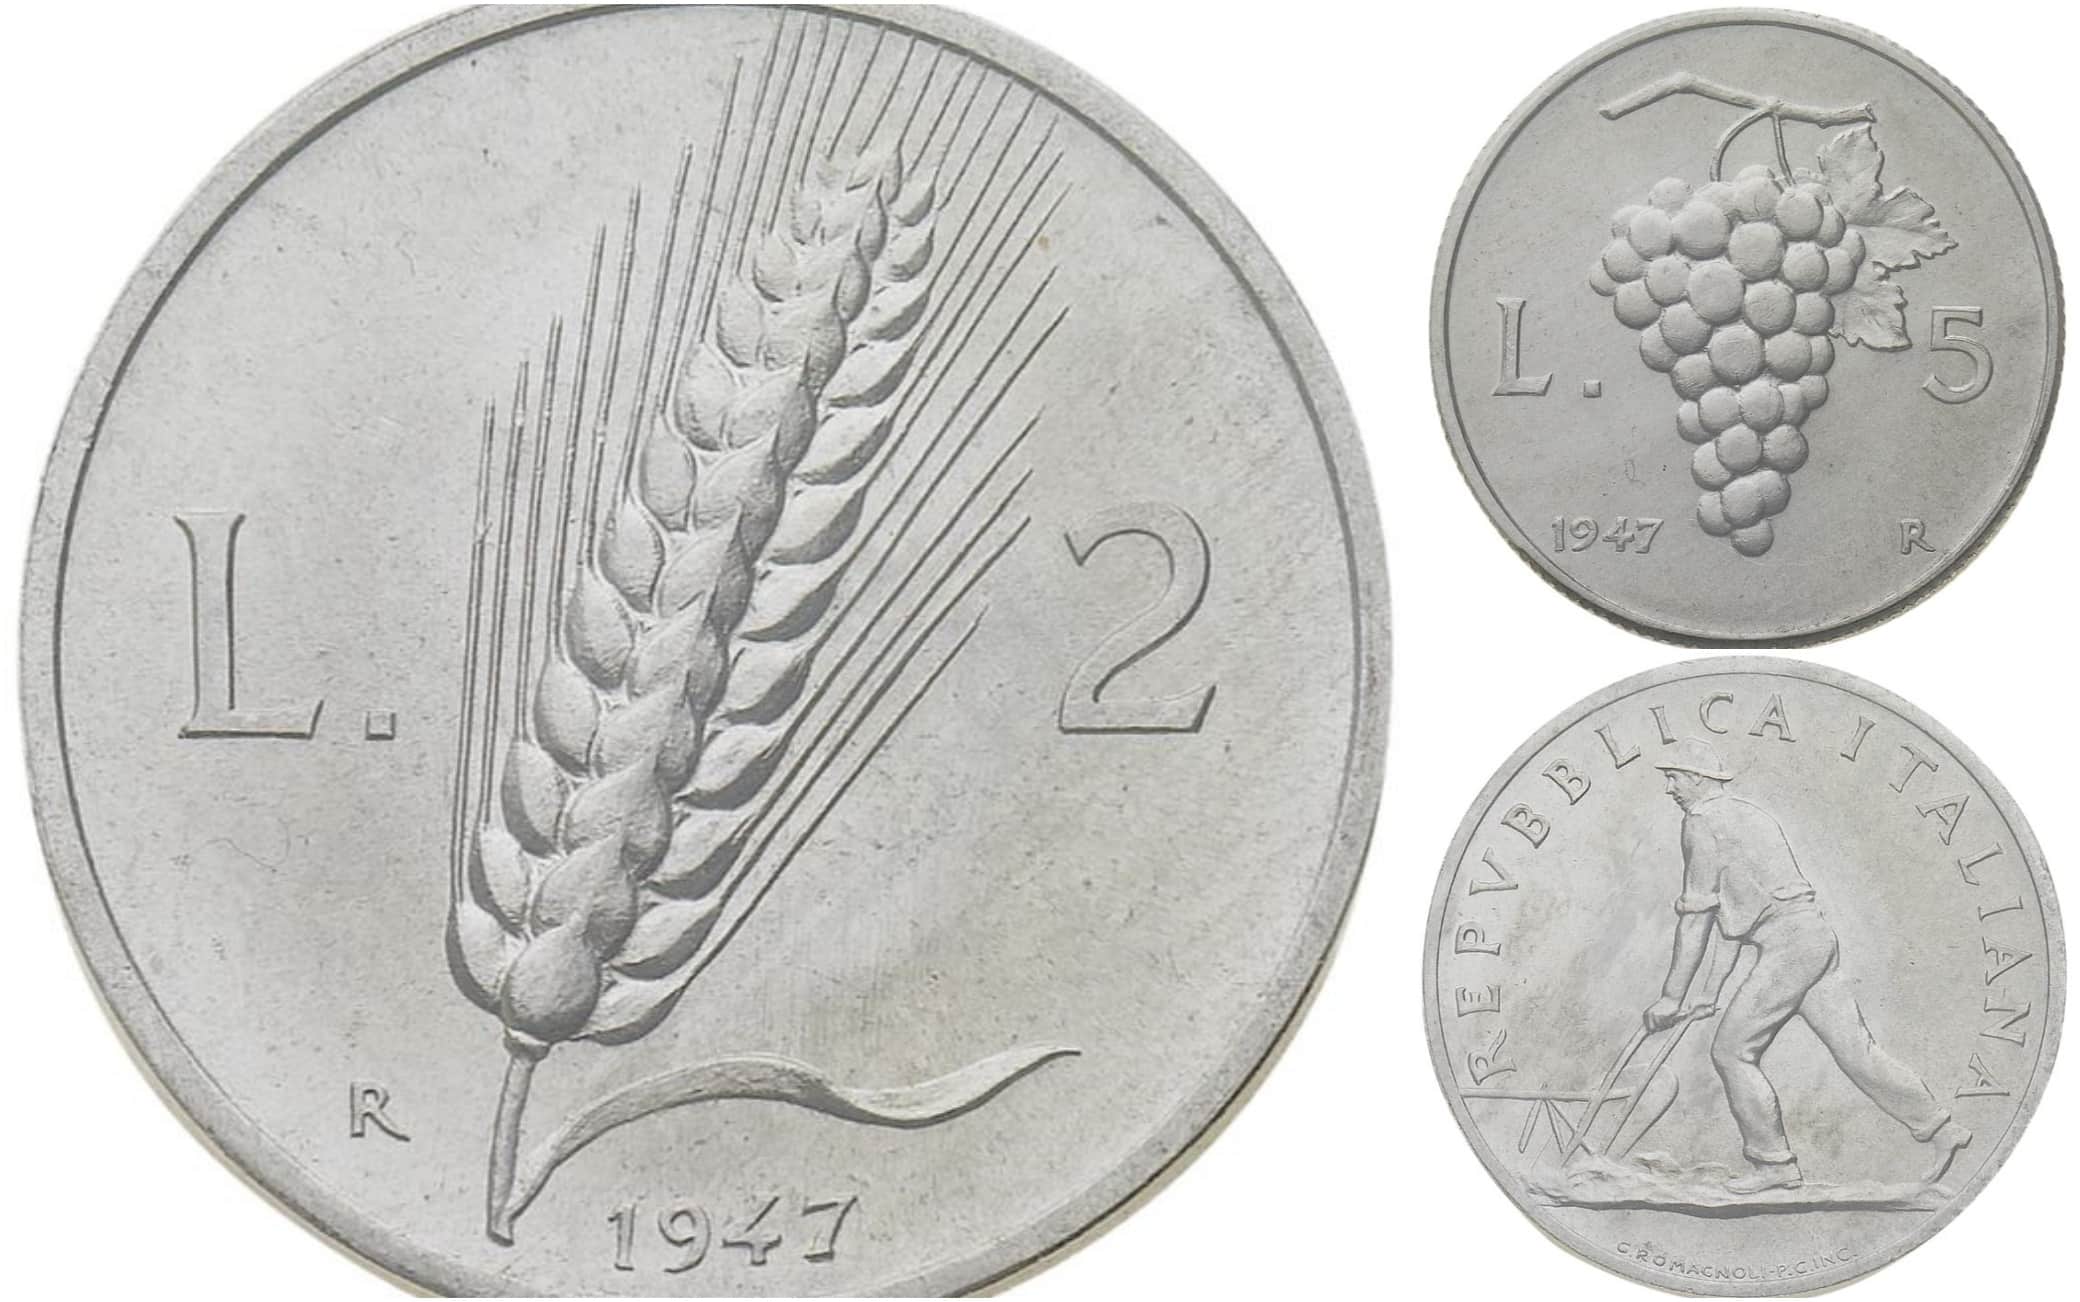 Monete rare, ecco le 10 lire che valgono fino a 4 mila euro